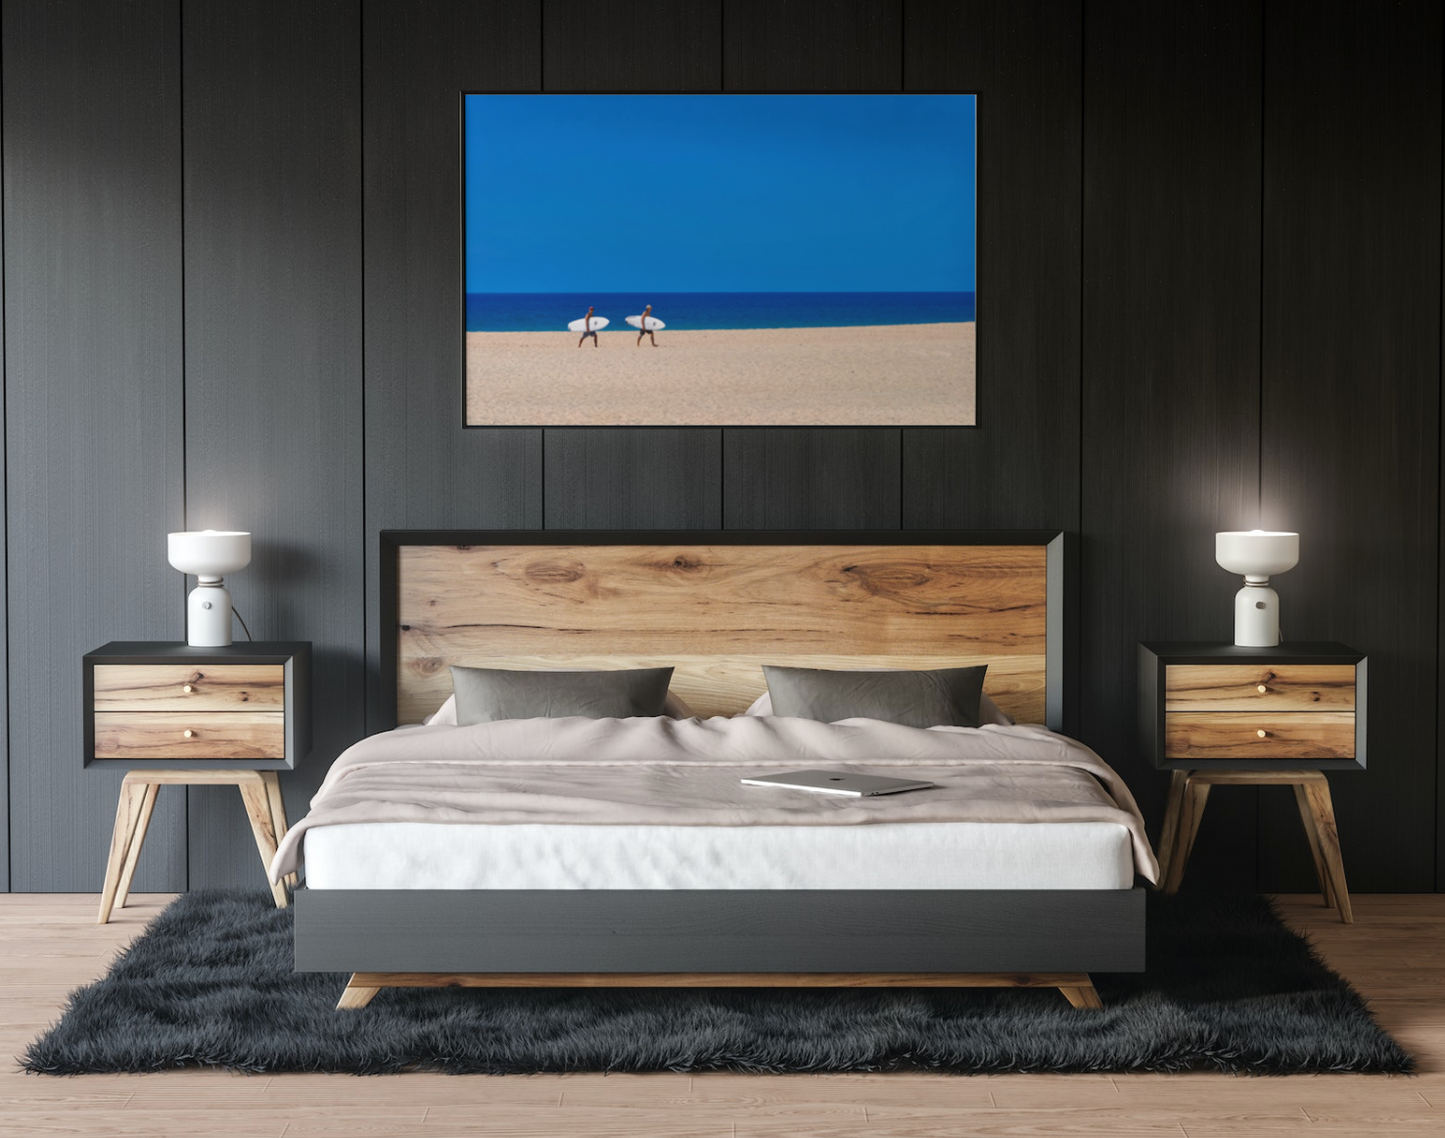 Deep Blue Surf -  Fine Art Photography - Wall Art